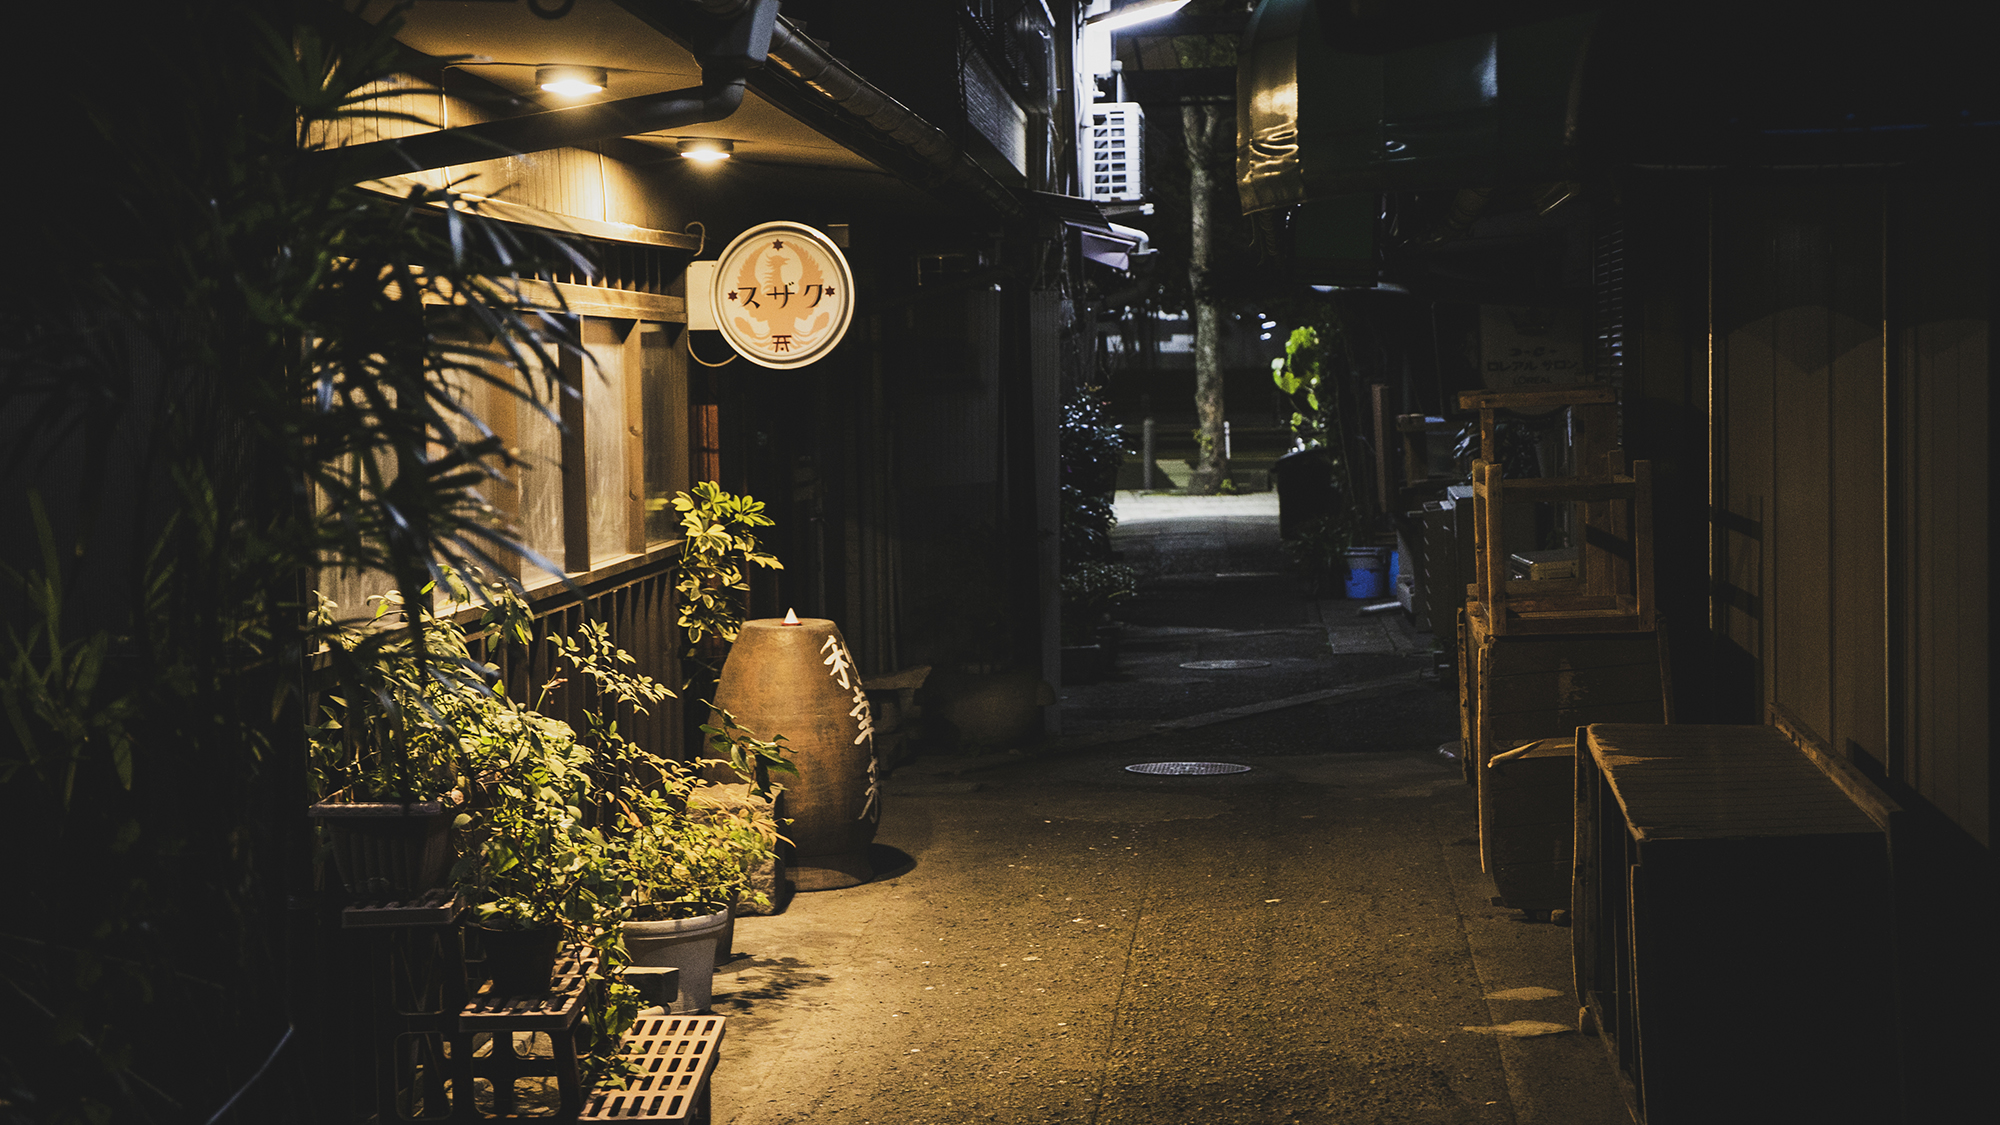 【古物とカフェを堪能できる店「スザク」】名山町にある新スポット。昭和の面影漂うオトナの純喫茶。